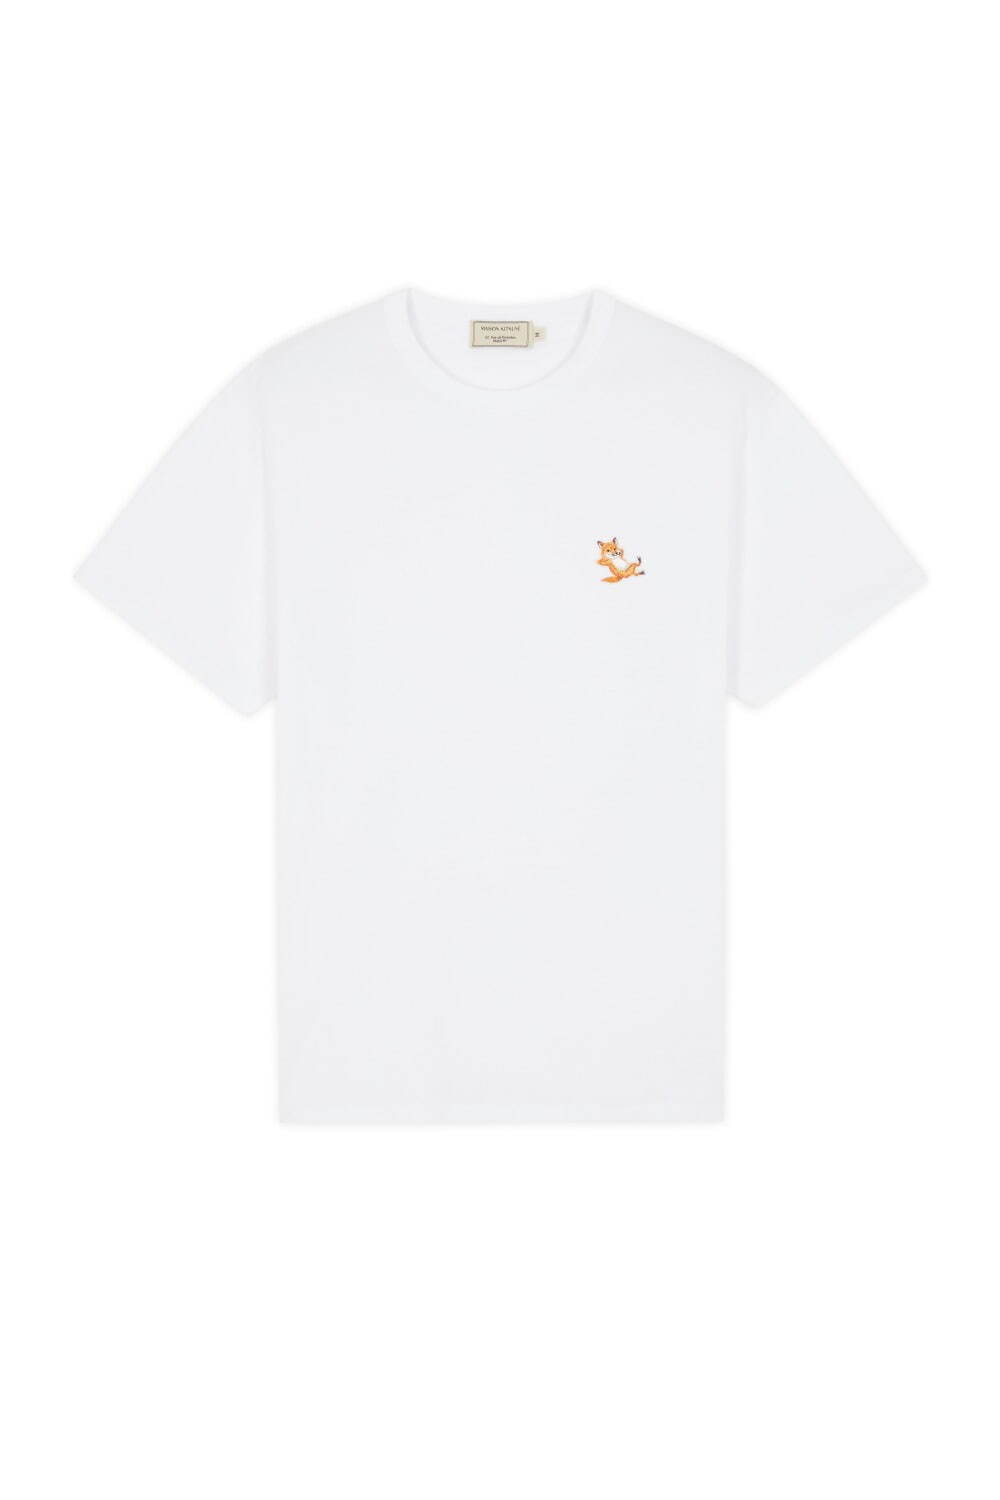 〈メゾン キツネ〉“くつろぐキツネ”を配した白Tシャツ